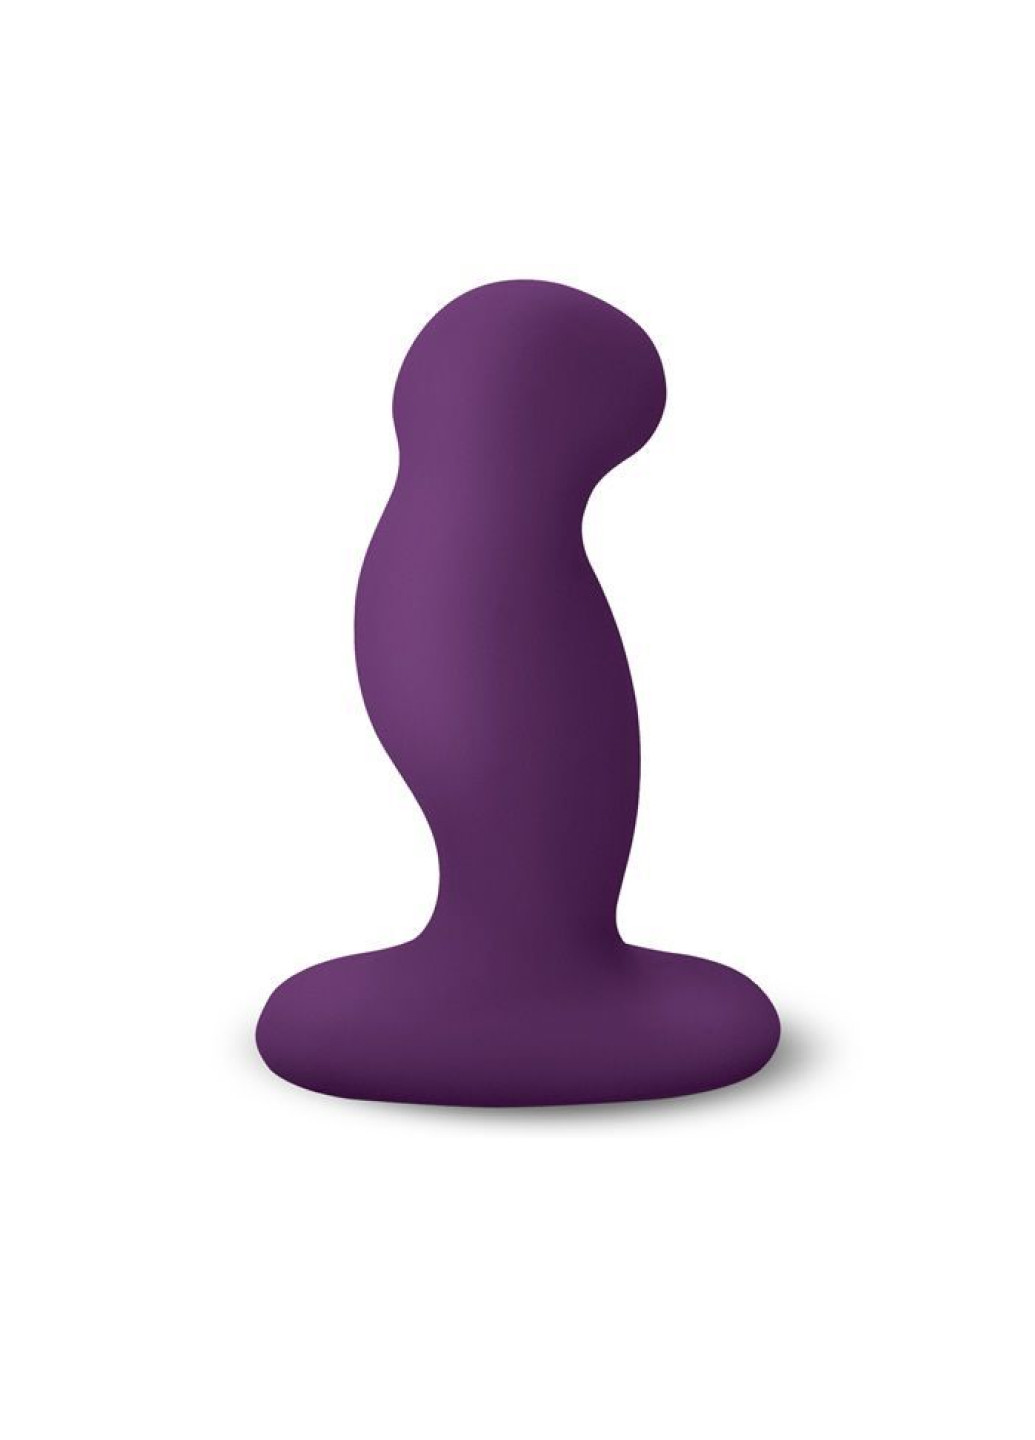 Вібромасажер простати G-Play Plus L Purple, макс діаметр 3,5см, перезаряджається Nexus (252042053)